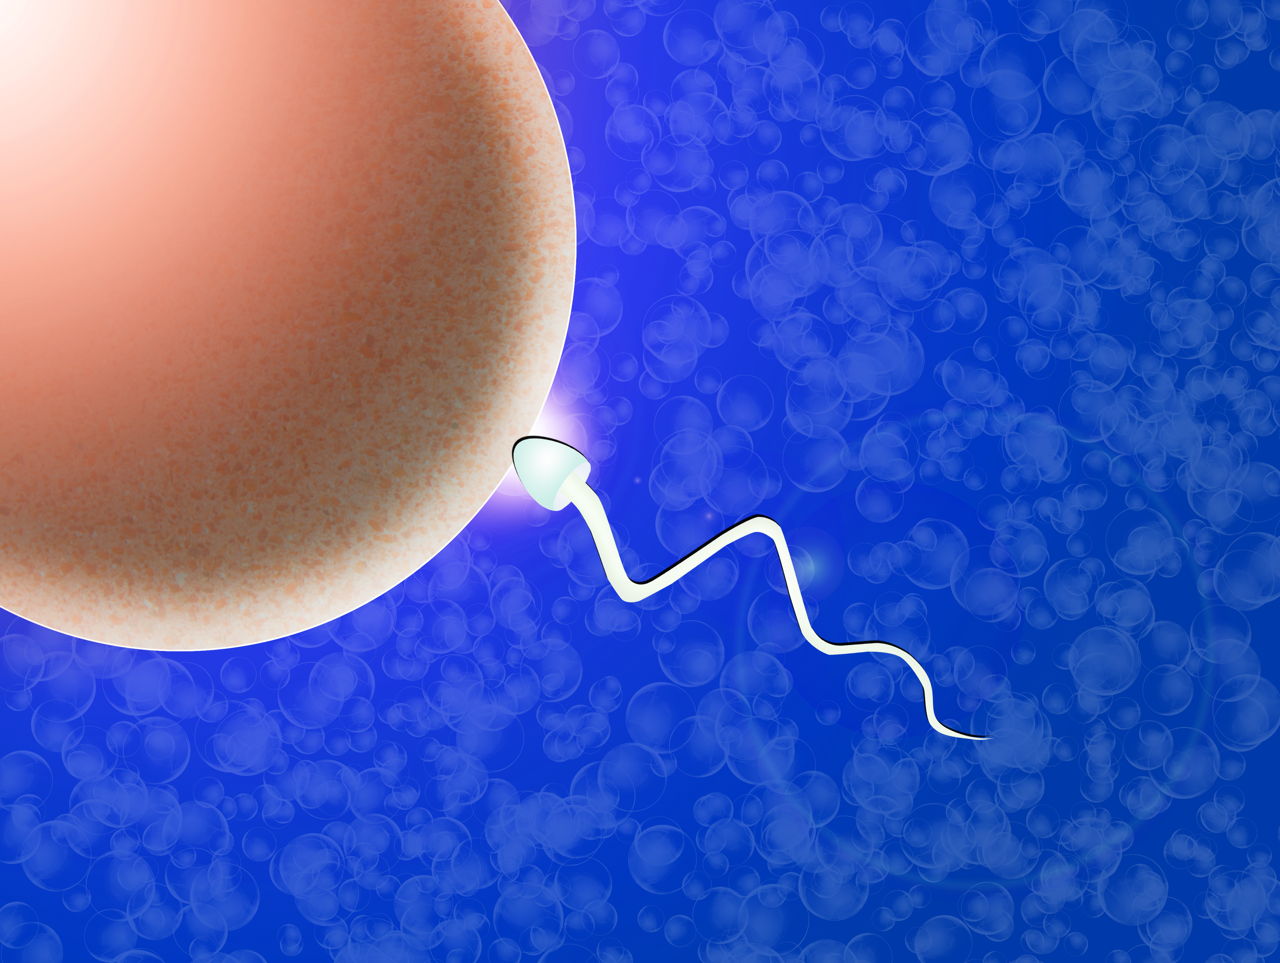 What is IVF or In Vitro Fertilization?